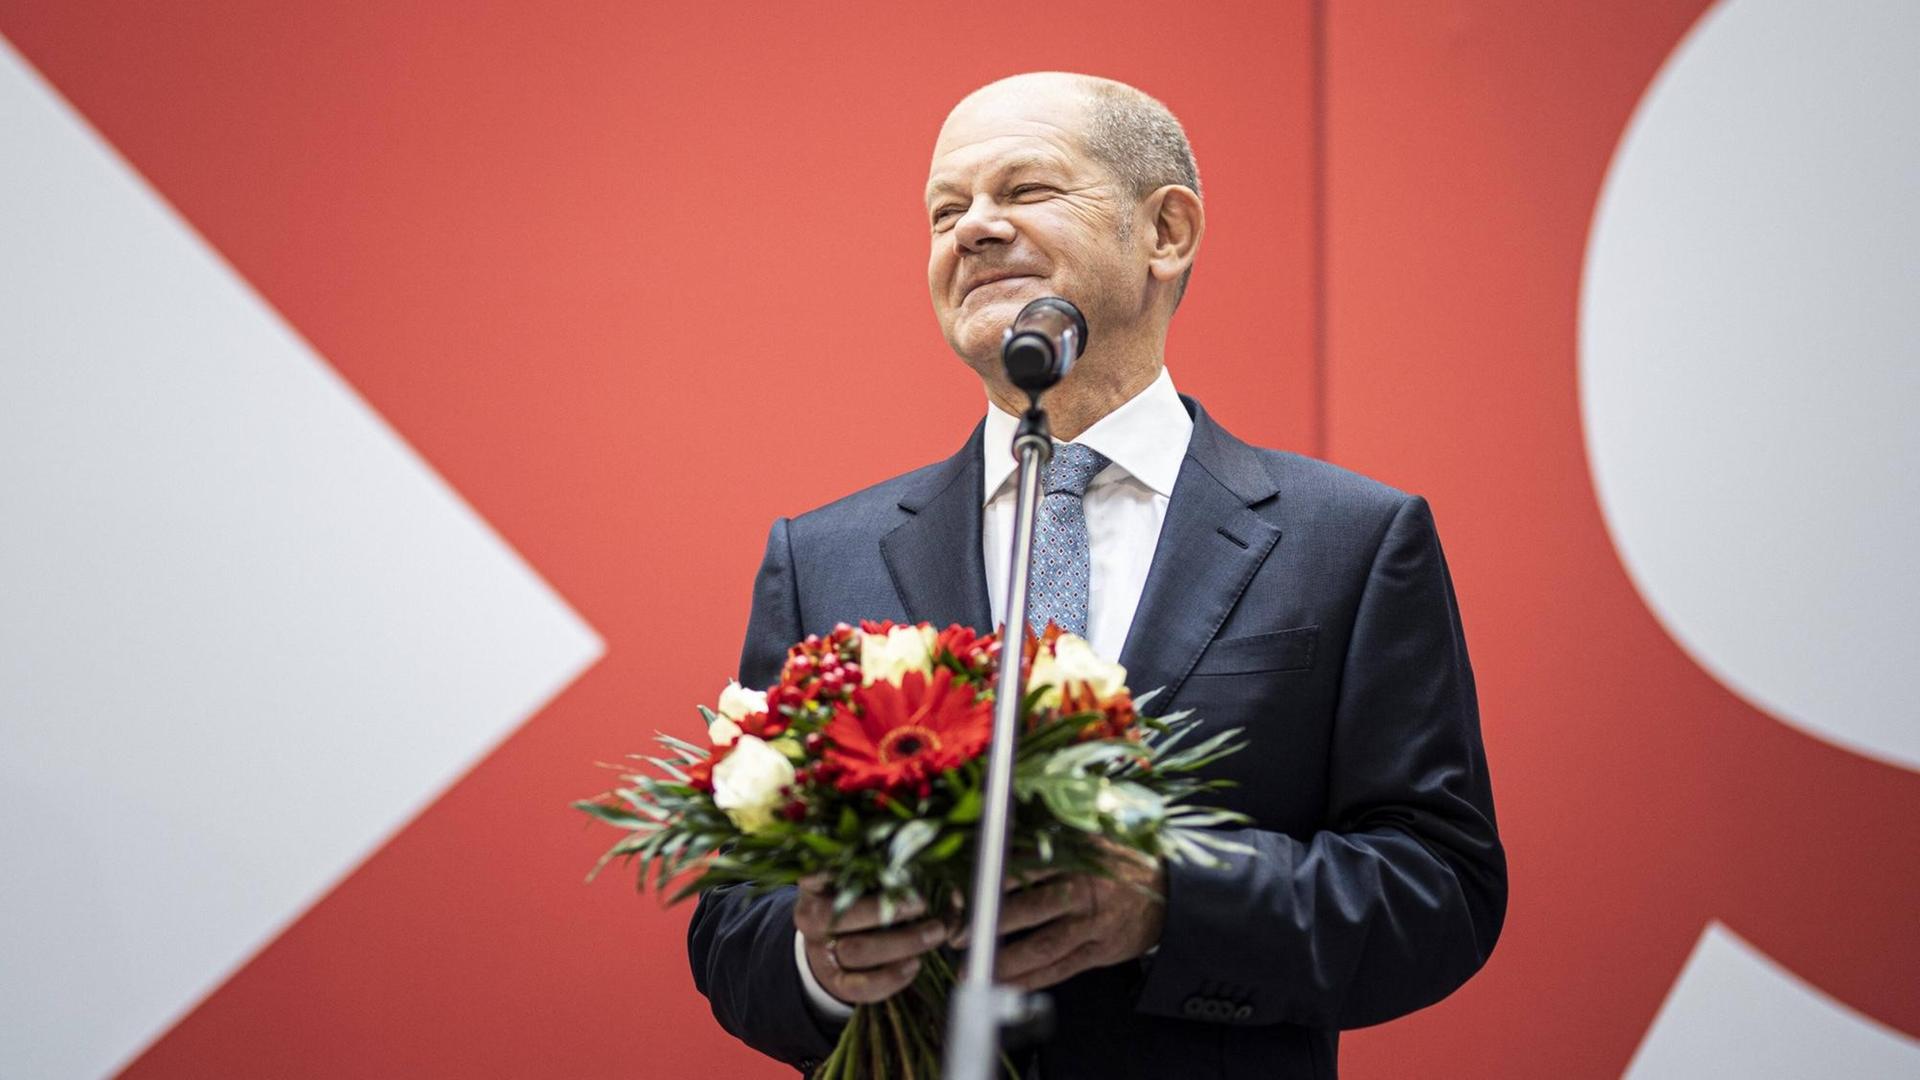 Olaf Scholz, Kanzlerkandidat der SPD, hält einen Blumenstrauß in der Hand und lächelt.